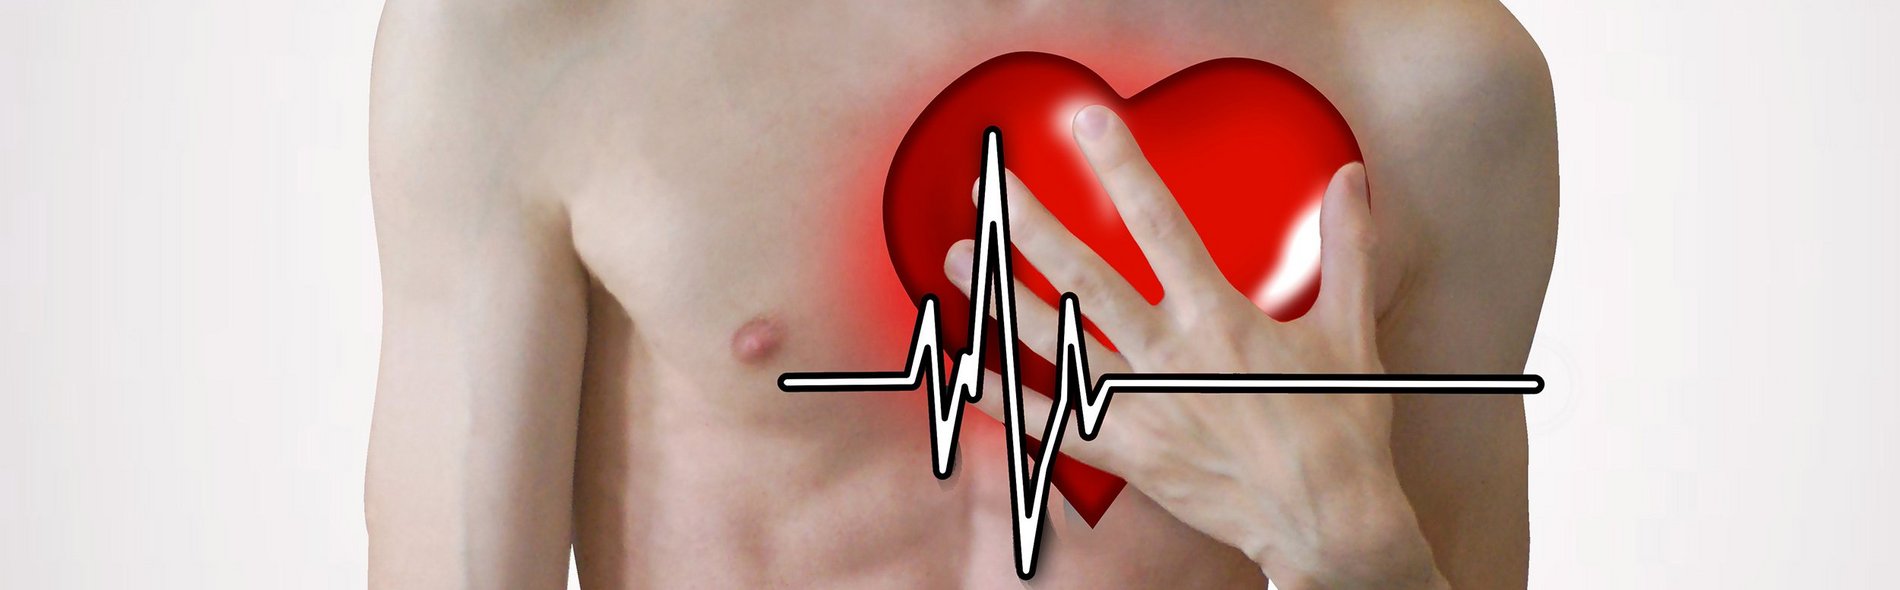 Brustschmerzen können ein Indiz für einen Herzinfarkt sein (Fotocollage: Stefan Mülders/Robystarm/OpenClipart-Vectors)